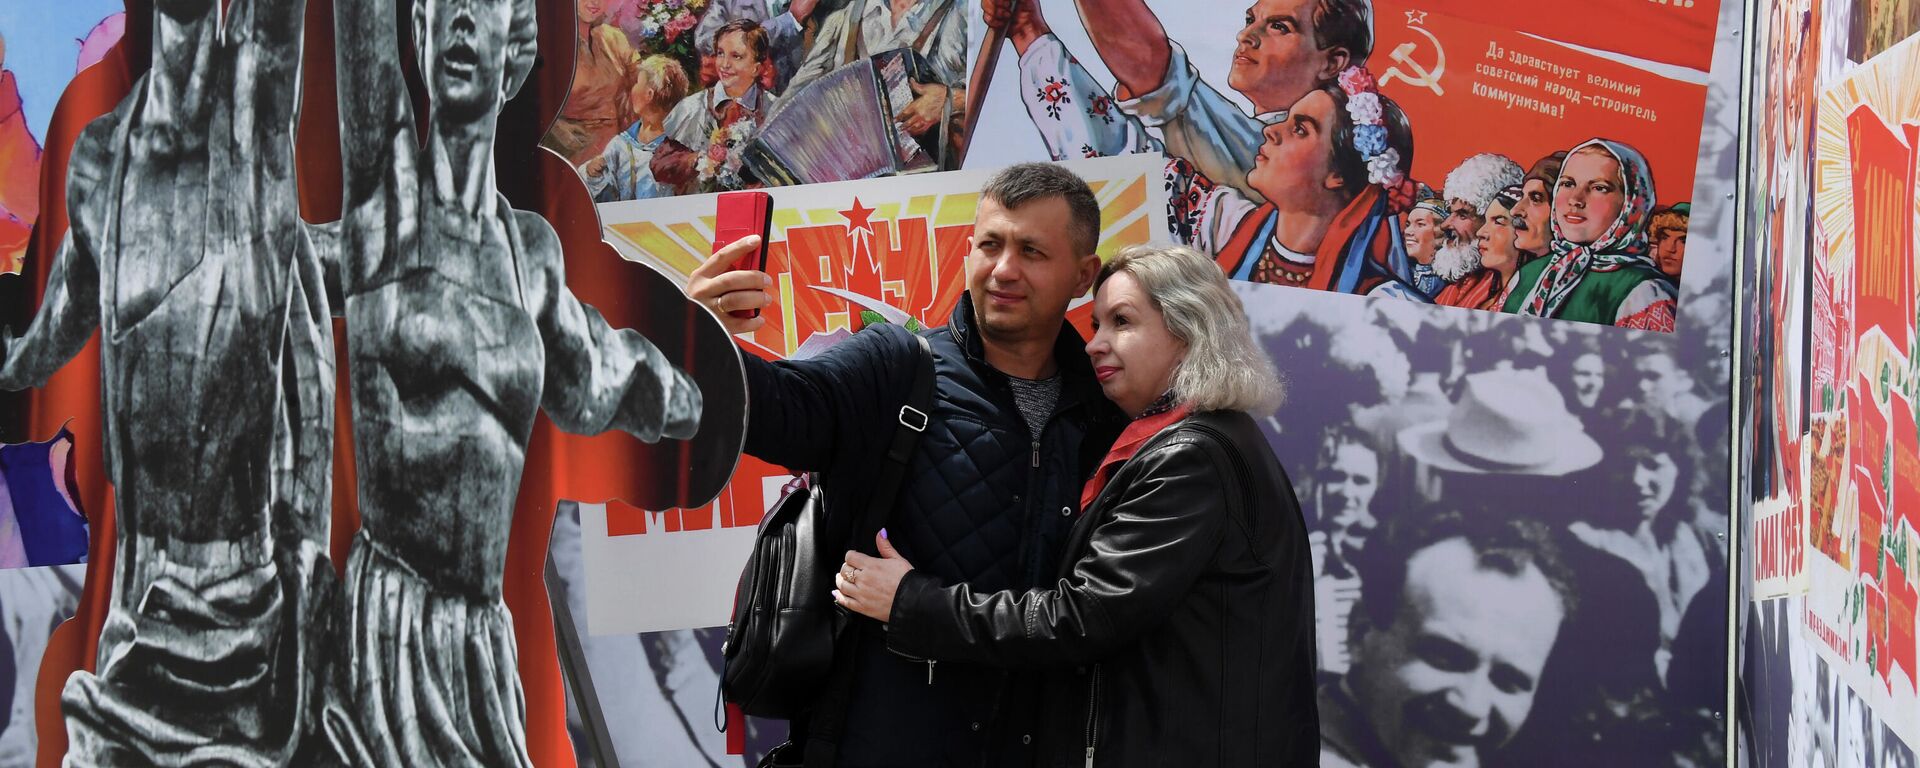 La gente se toma fotos frente a los carteles soviéticos para la fiesta del 1 de mayo - Sputnik Mundo, 1920, 01.05.2021